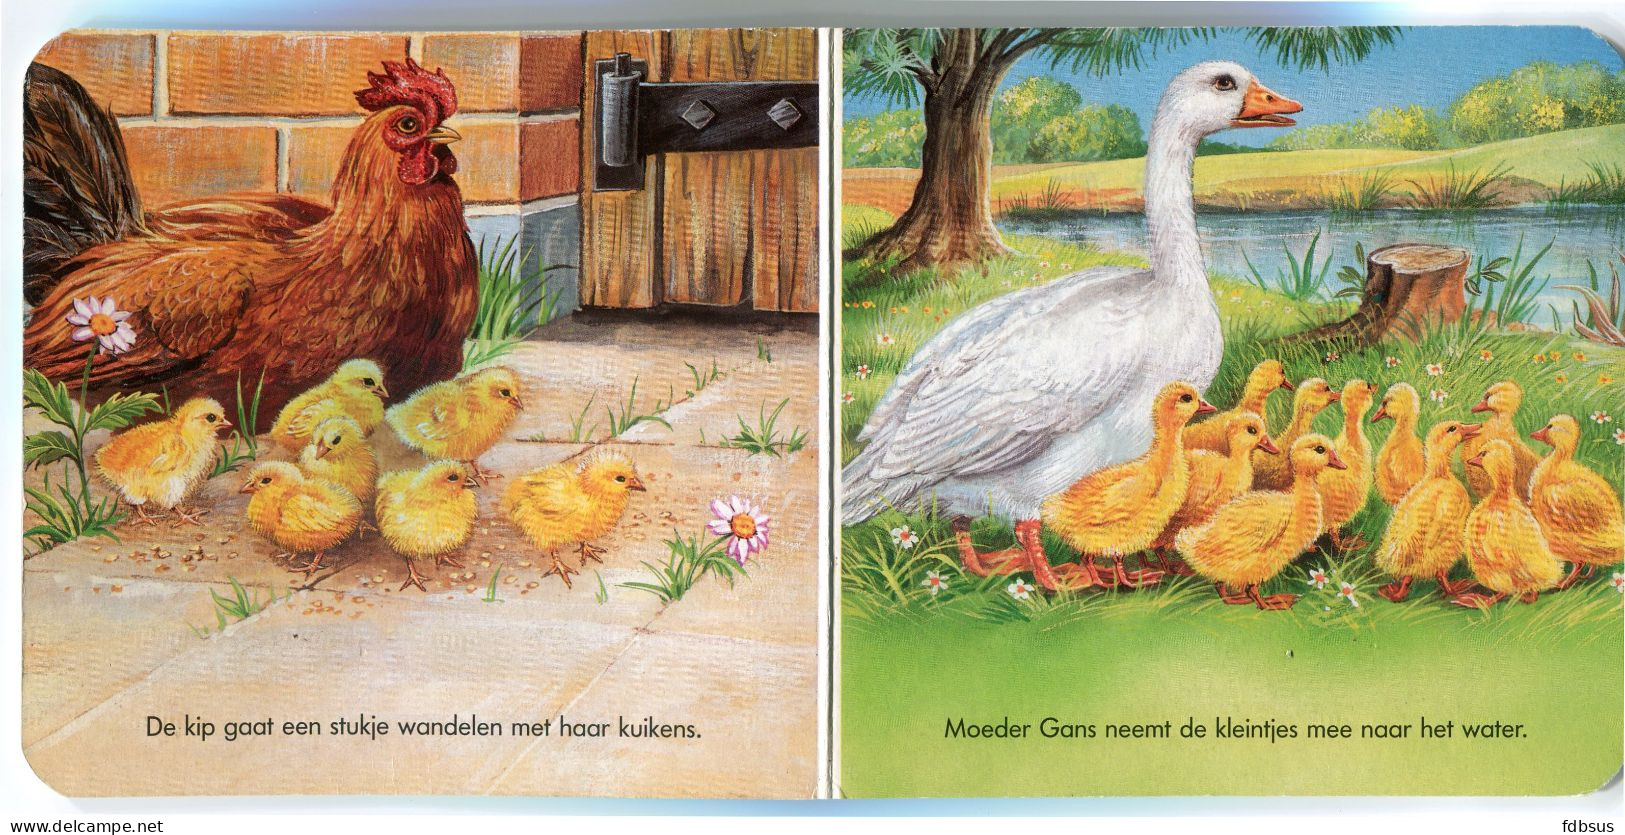 Boekje Voor Kleuters - Moeder En Kind - Uitgegeven 1997 Pestalozzi Verlag Munchen - Nl Kalshoven Productions Boardbook - Kids